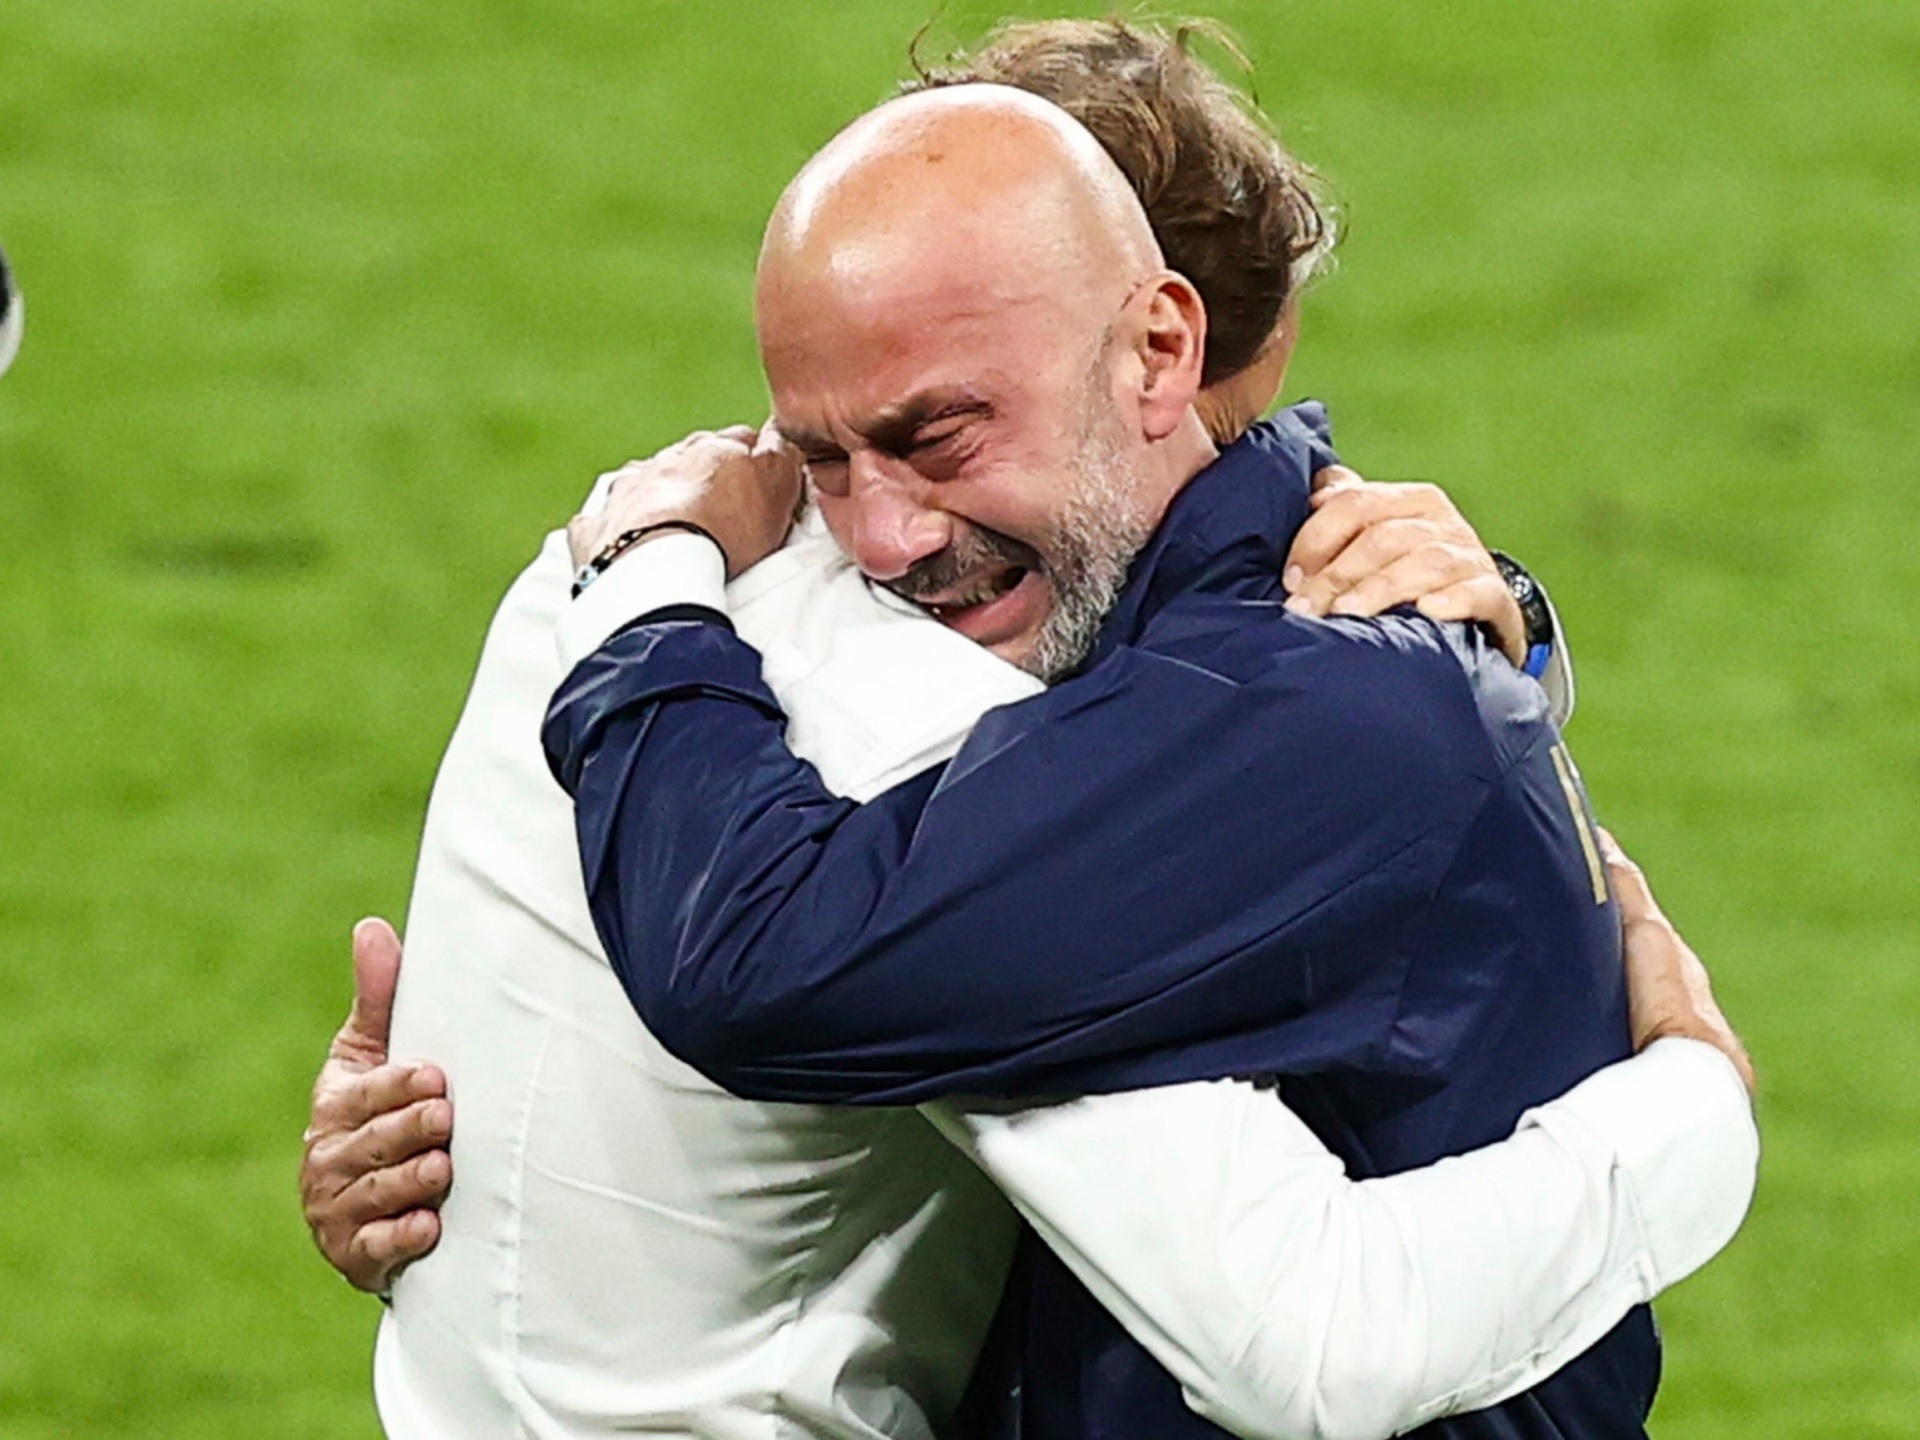 Khoảnh khắc vô địch EURO 2020 với Vialli và Mancini mới như ngày hôm qua. Ảnh: UEFA